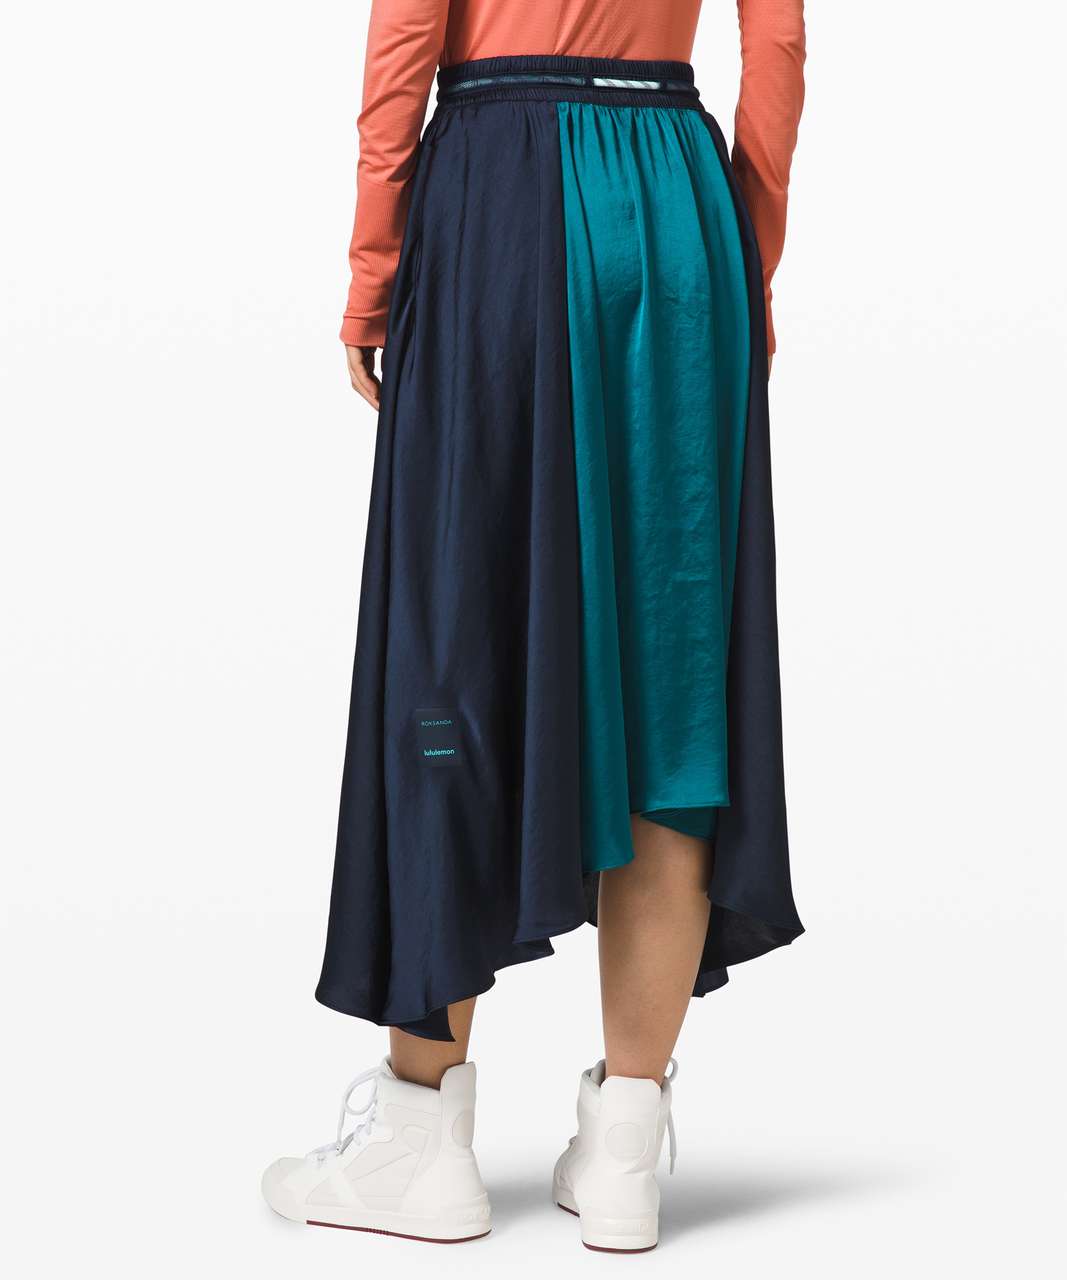 Lululemon Face Forward Skirt *lululemon x Roksanda - True Navy / Emerald / Frost